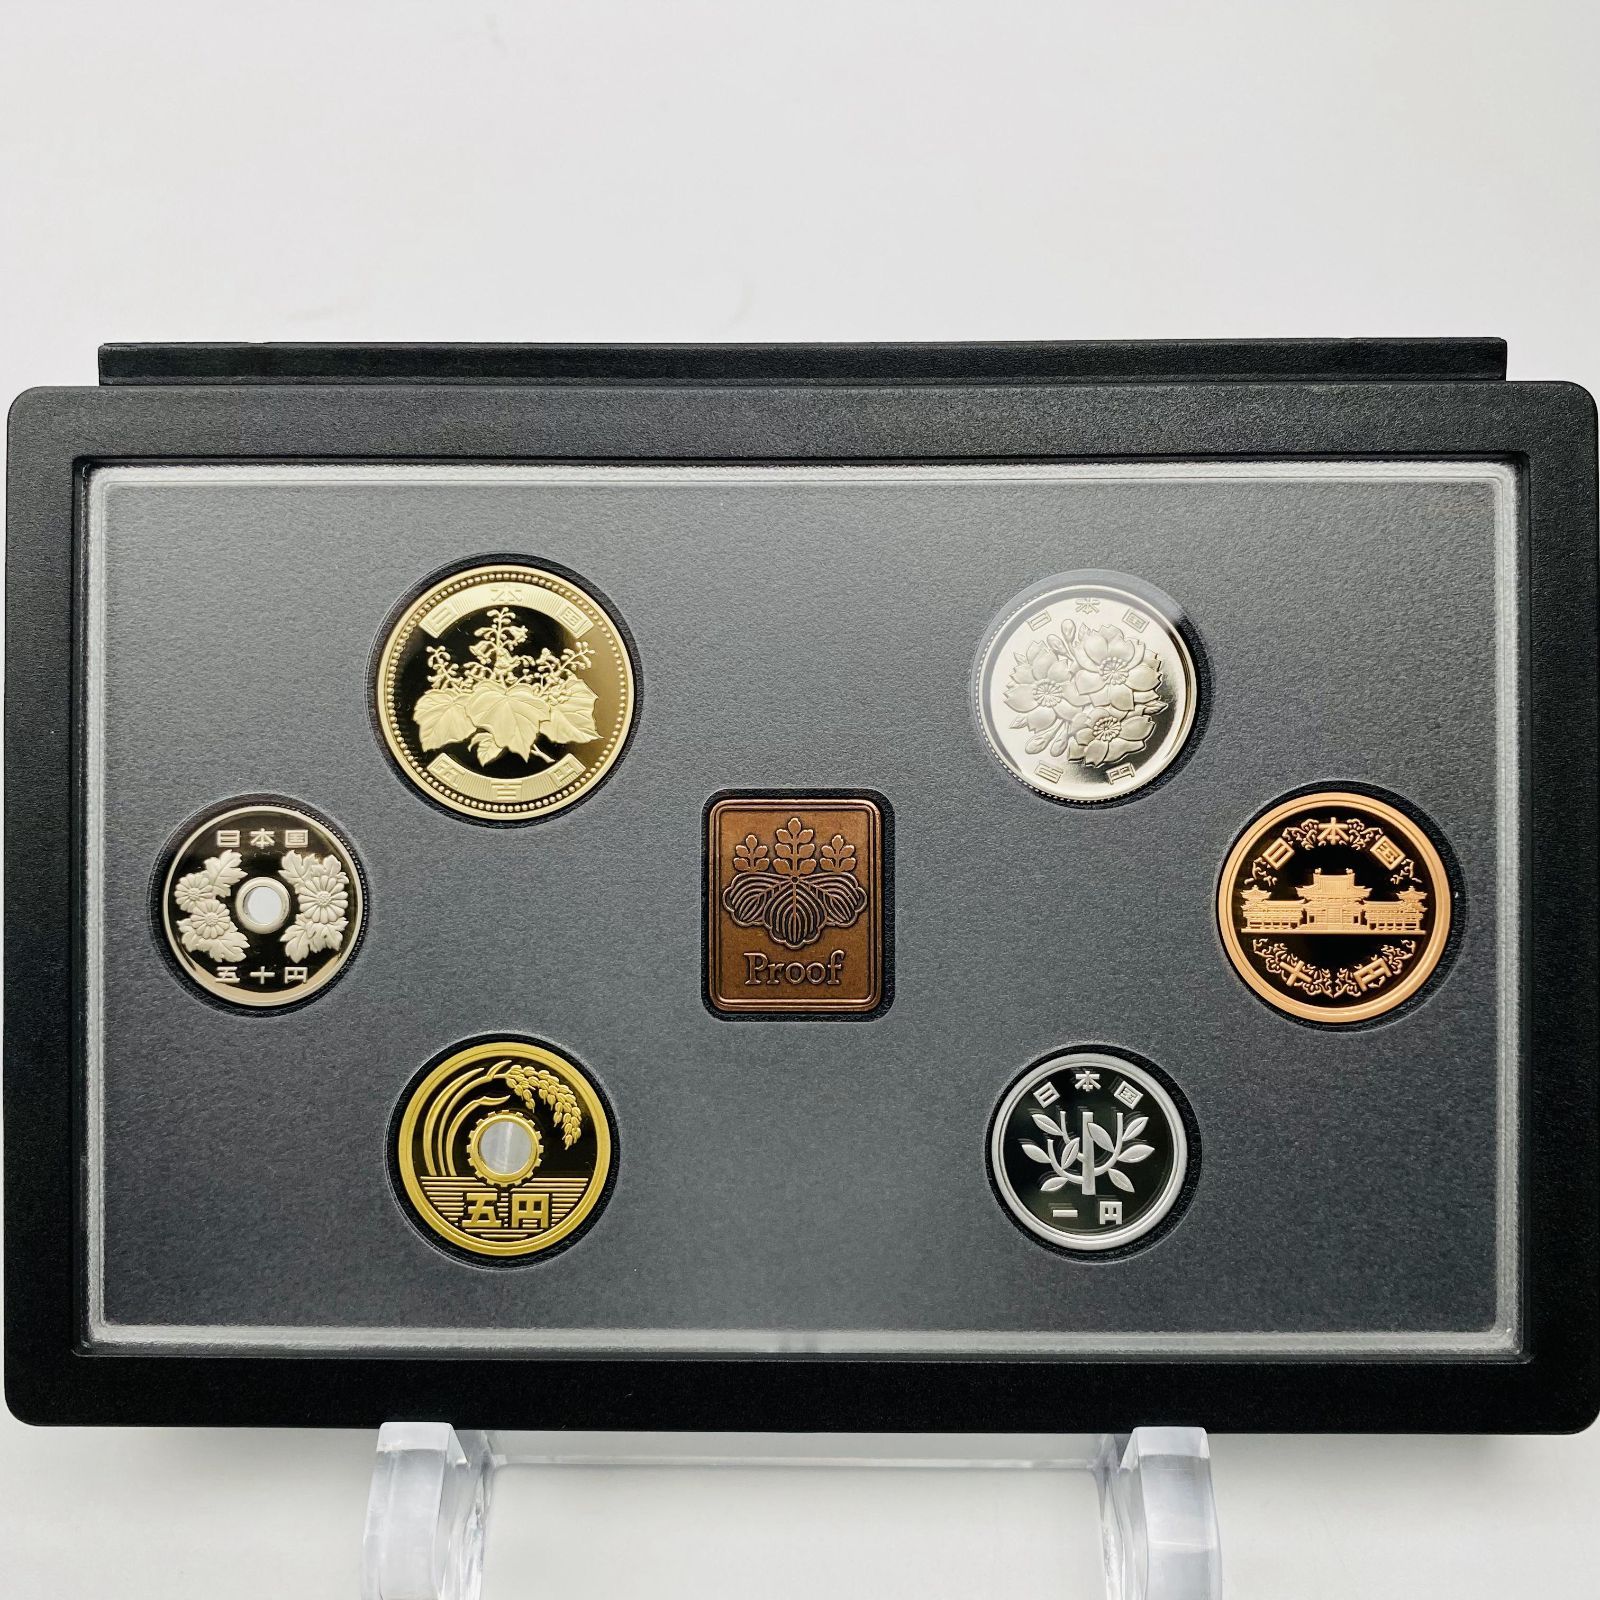 1989年 平成元年 通常プルーフ貨幣セット 額面666円 年銘板有 全揃い 